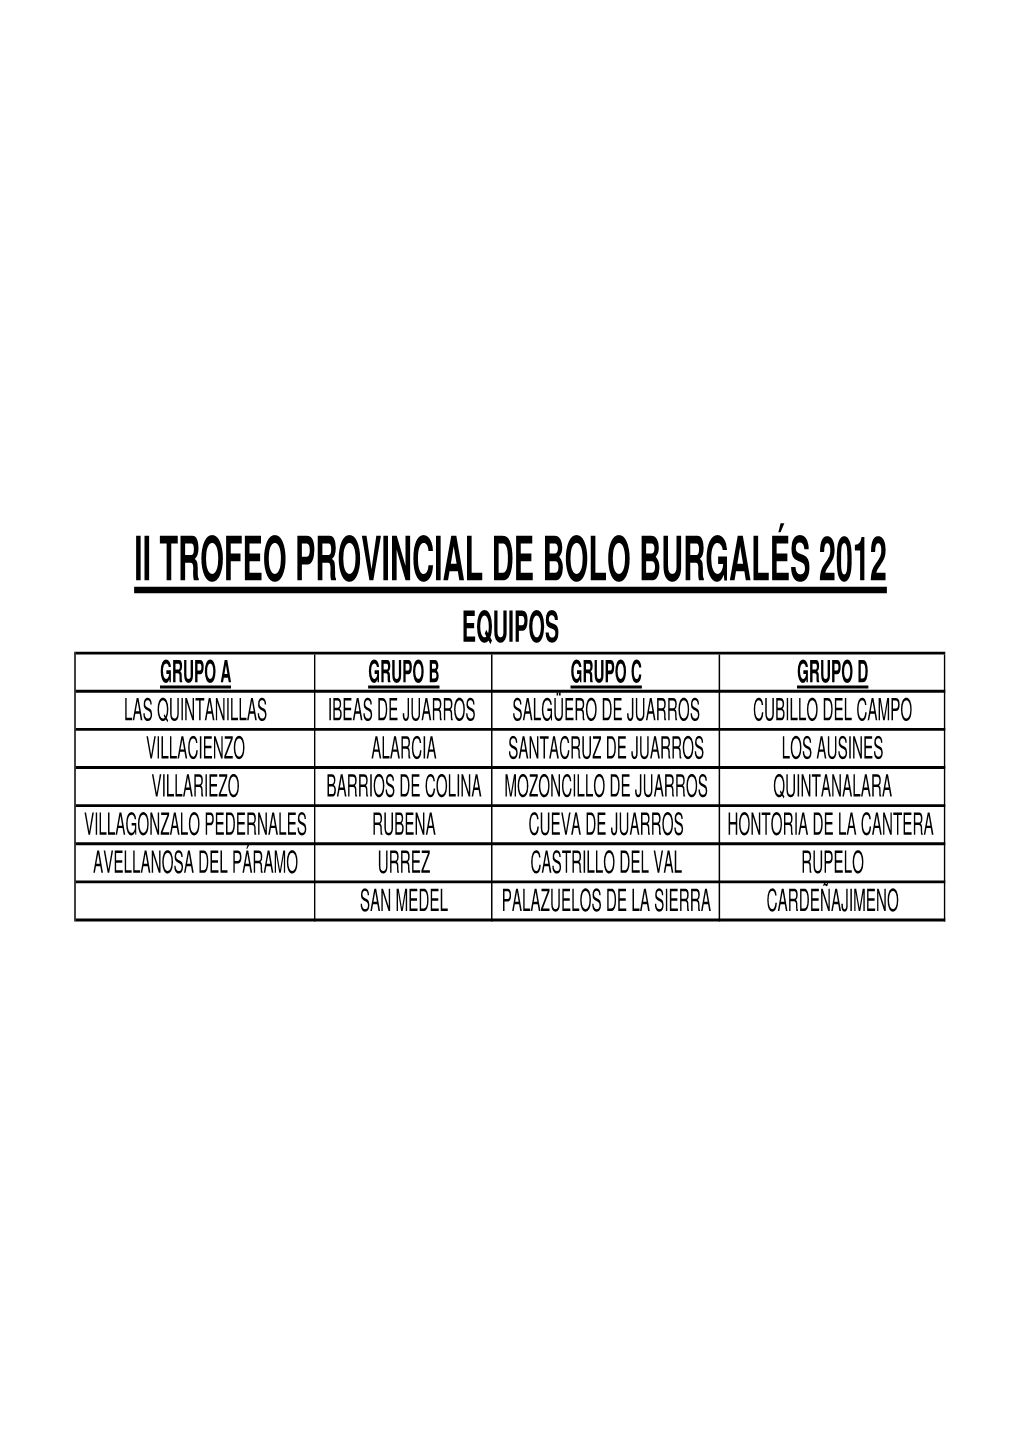 Equipos-Delegados-Calendario 2012